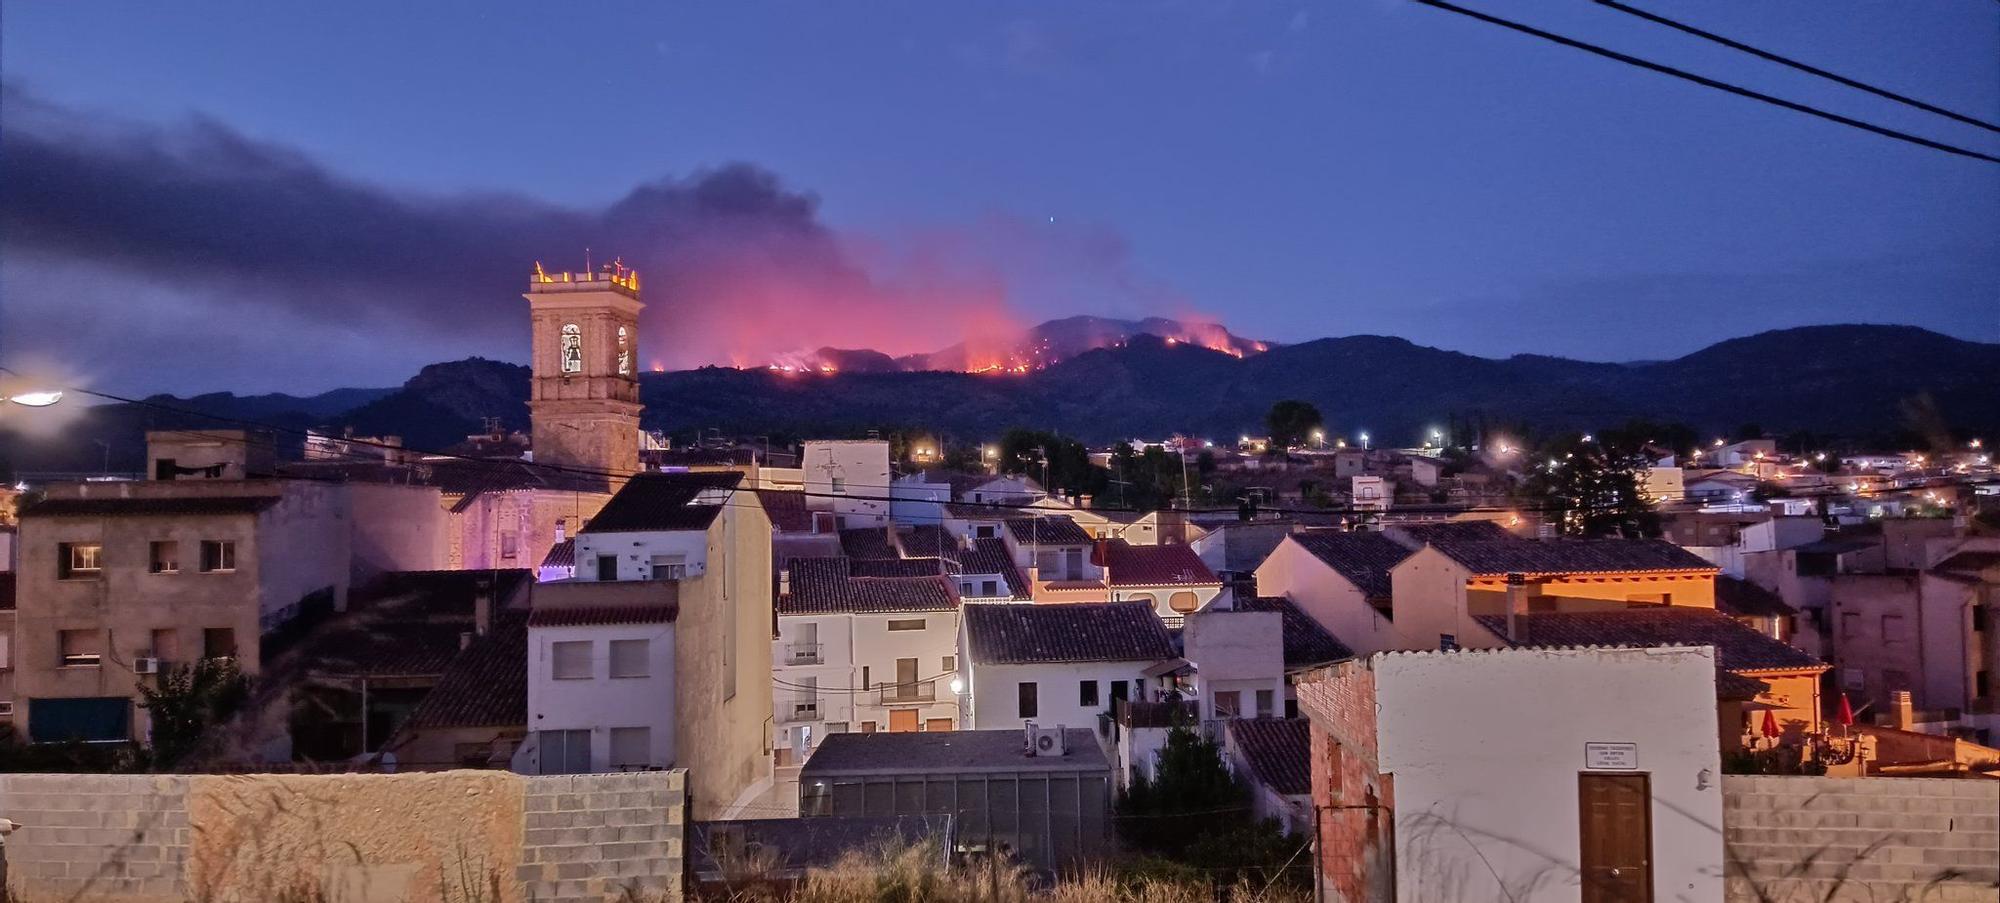 Un incendio forestal pone en alerta a Calles, en La Serranía